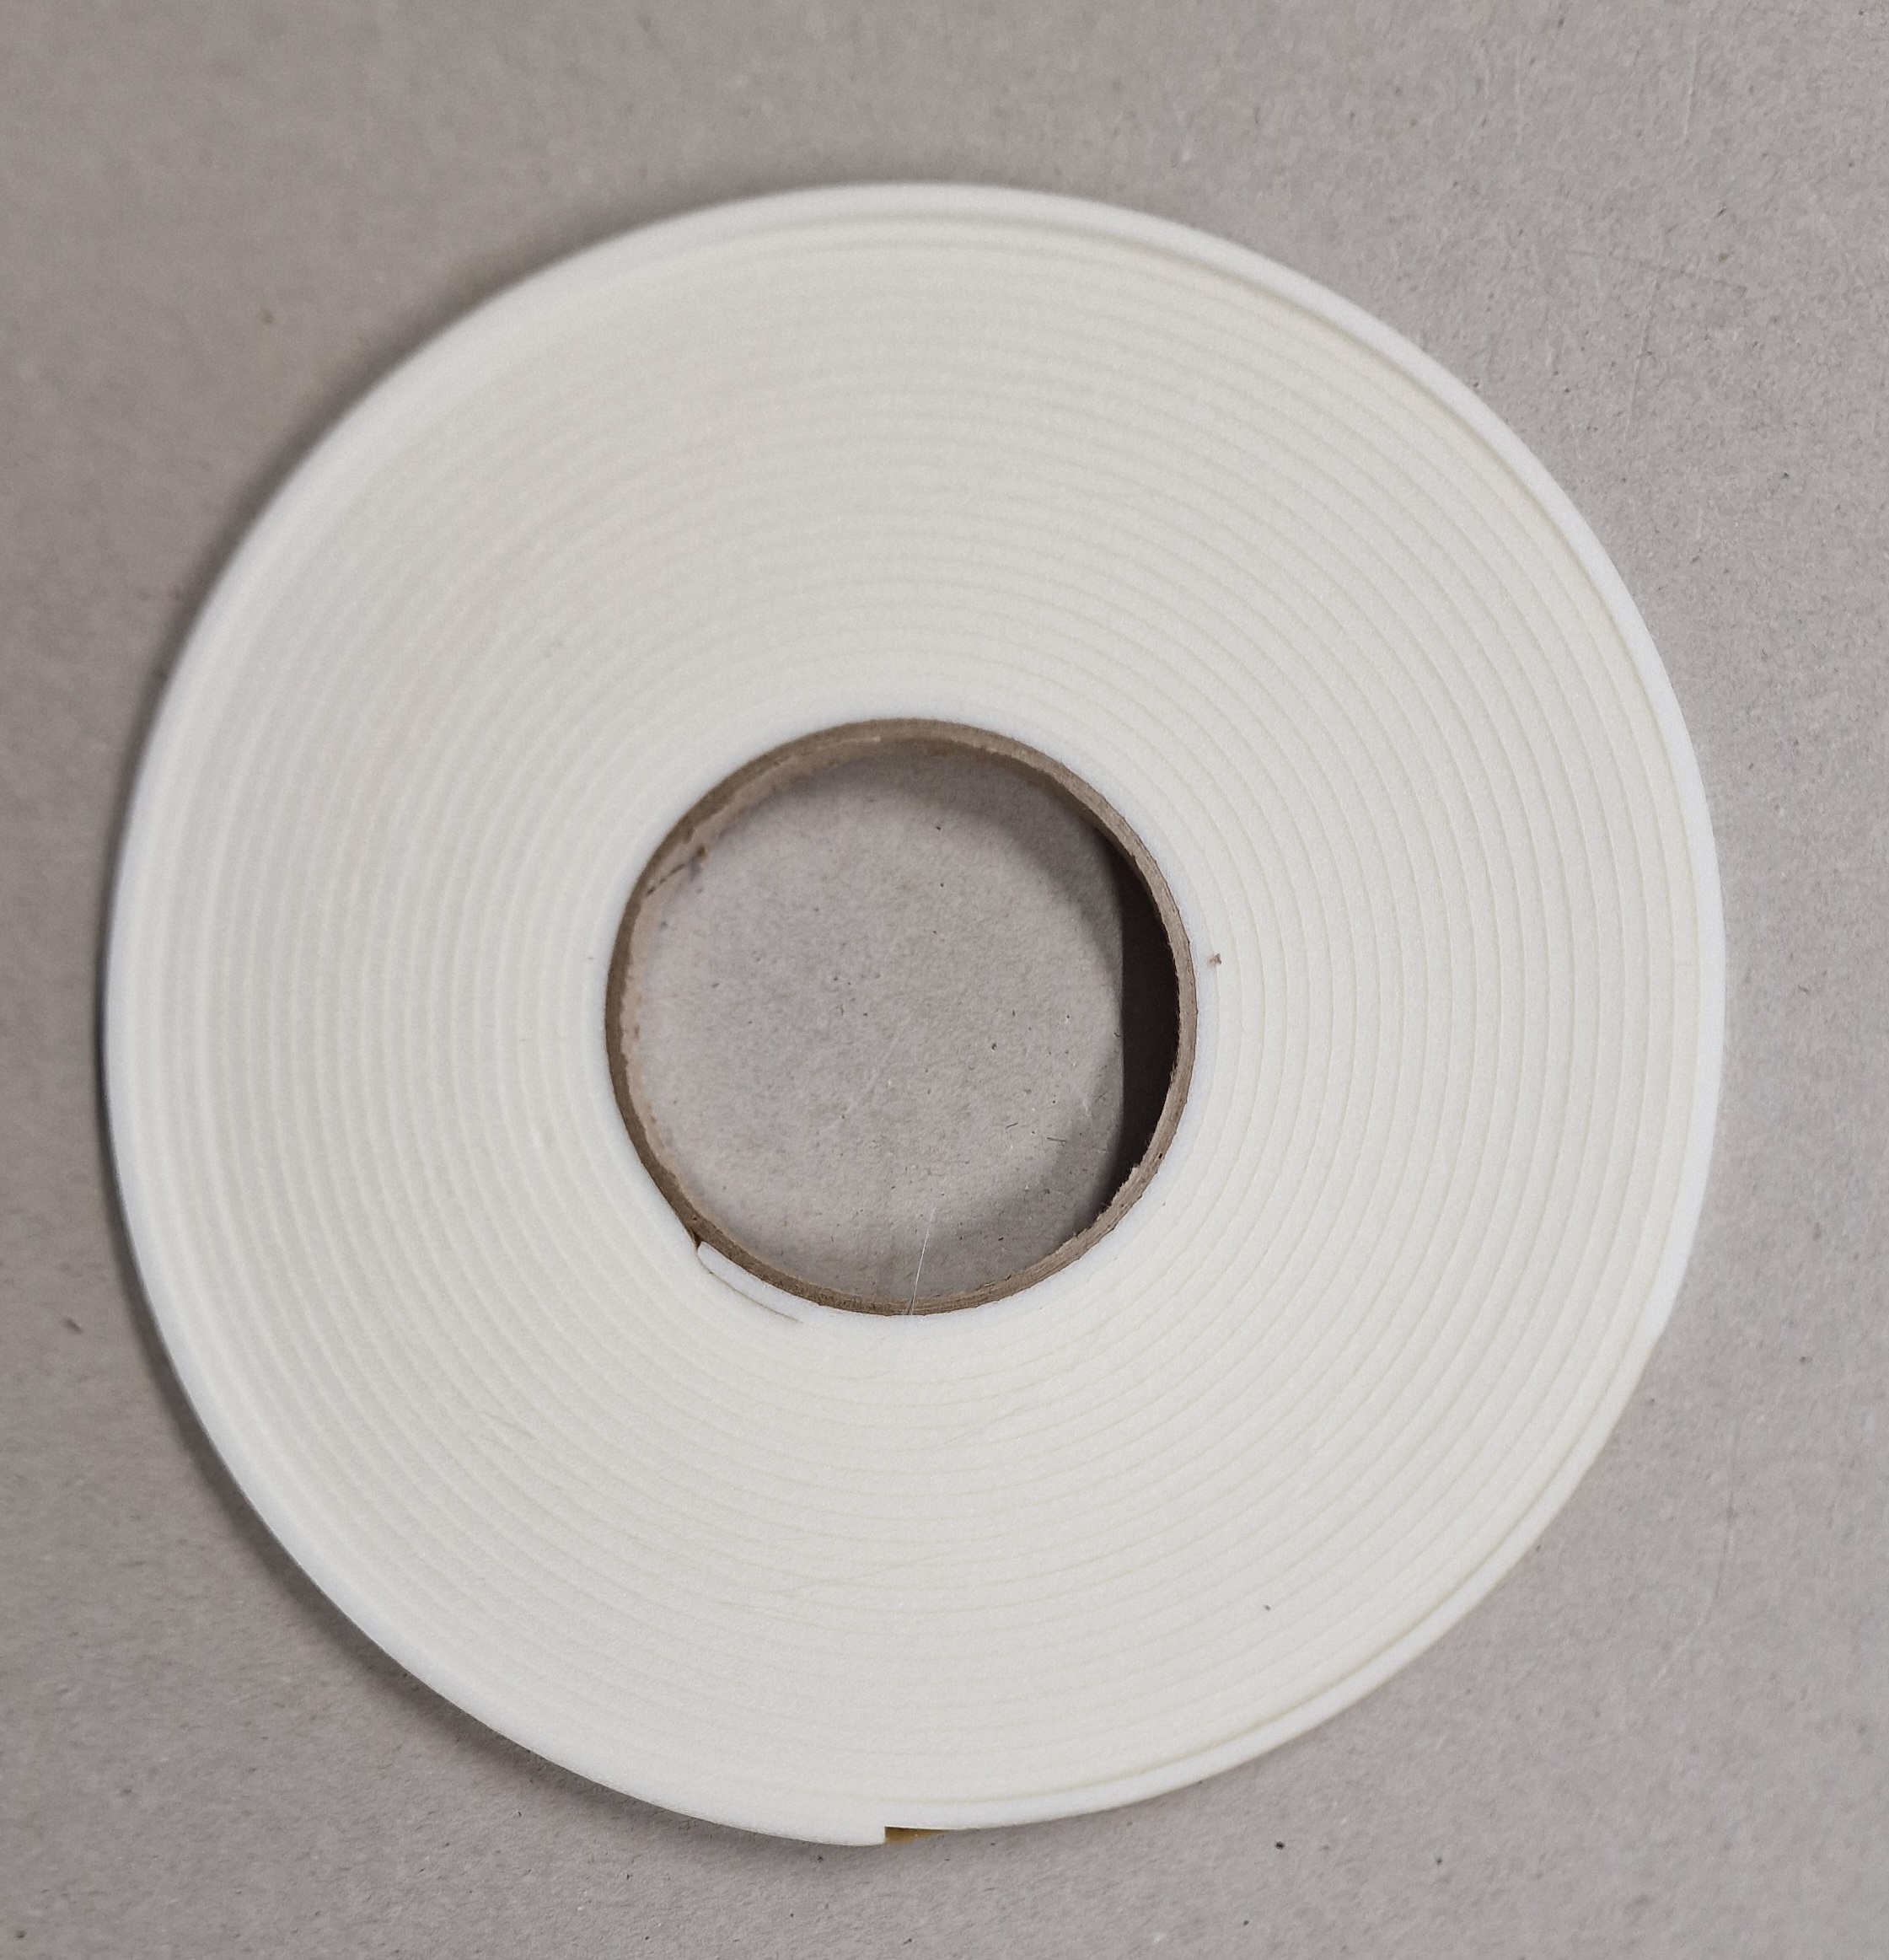 Dichtungsband 10x3mm  für Filter oder Wärmetauscher weiß, Rolle 10m